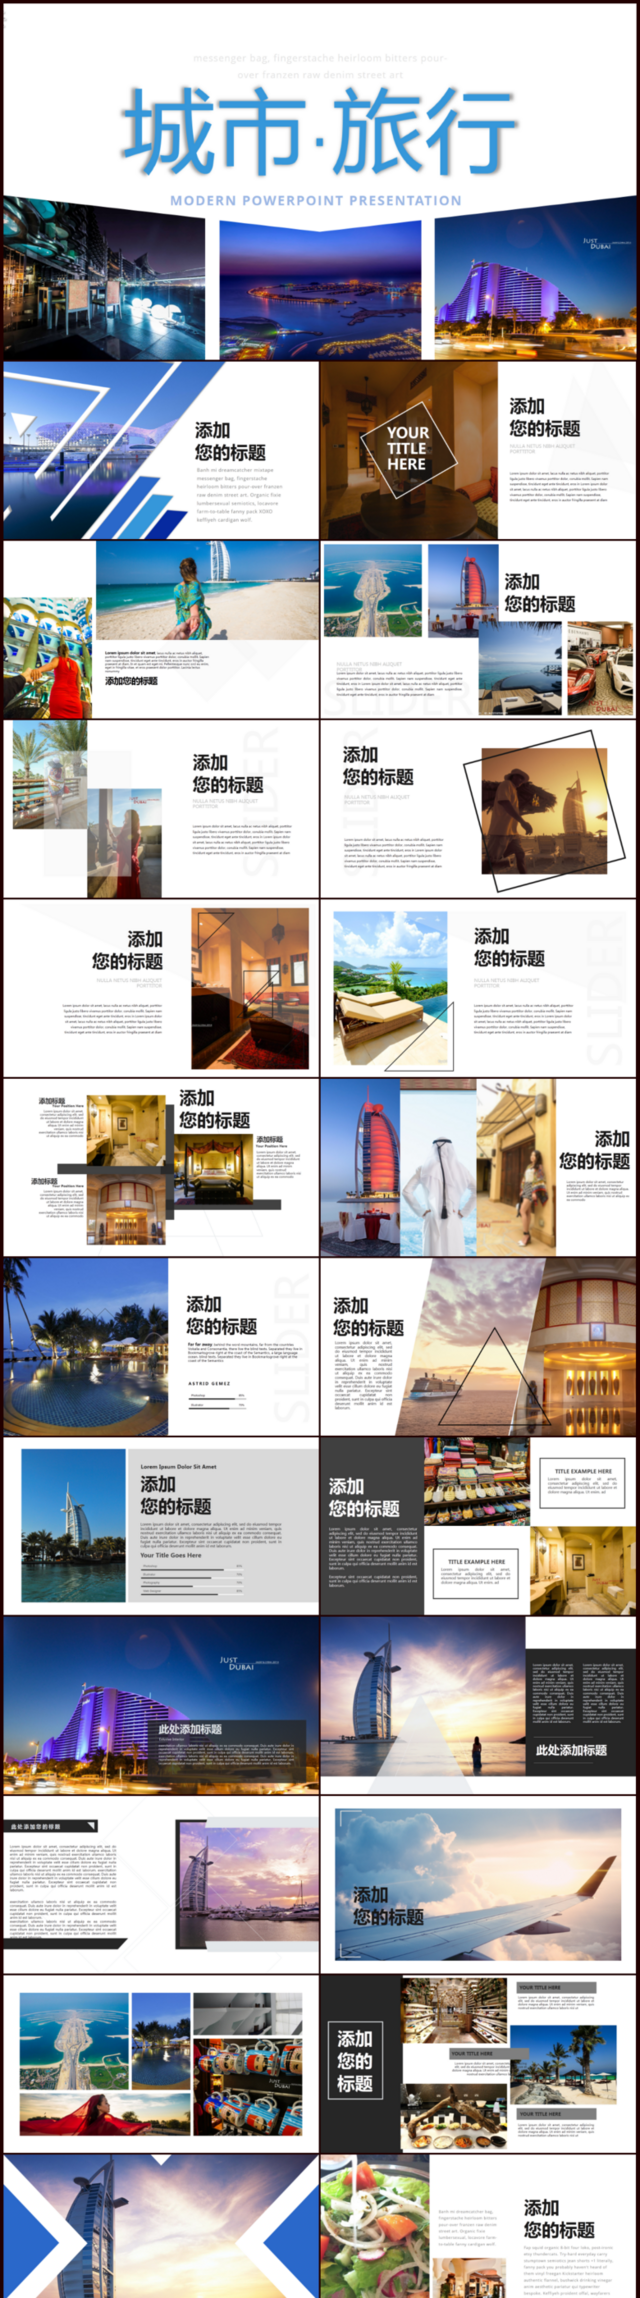 城市旅行图片展示旅游相册企业宣传旅游日记